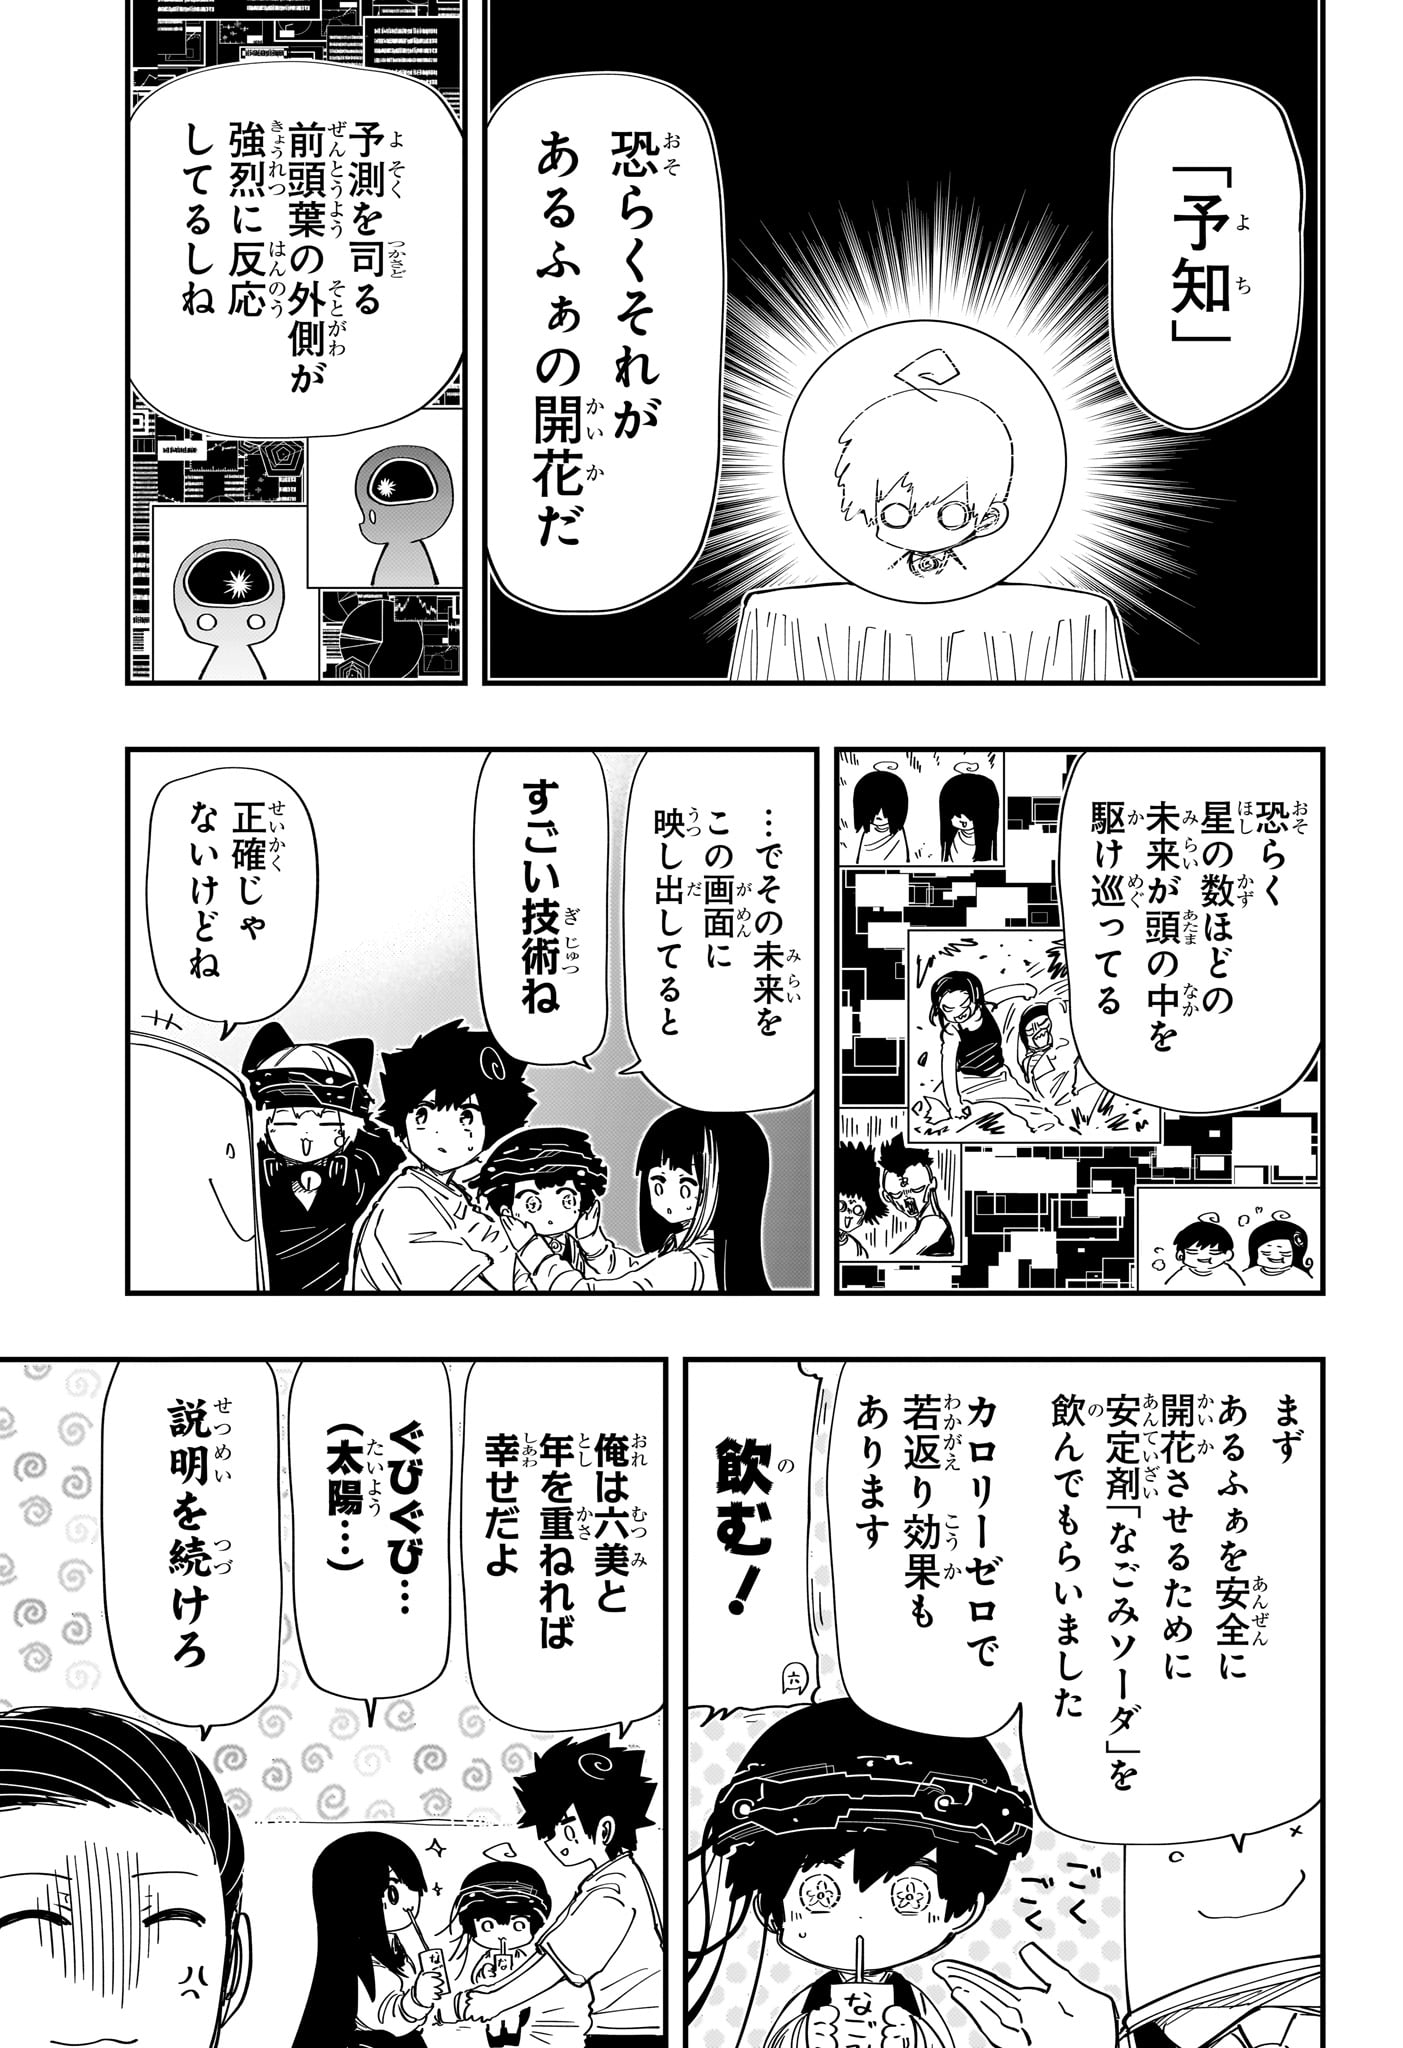 Yozakura-san Chi no Daisakusen - Chapter 222 - Page 3